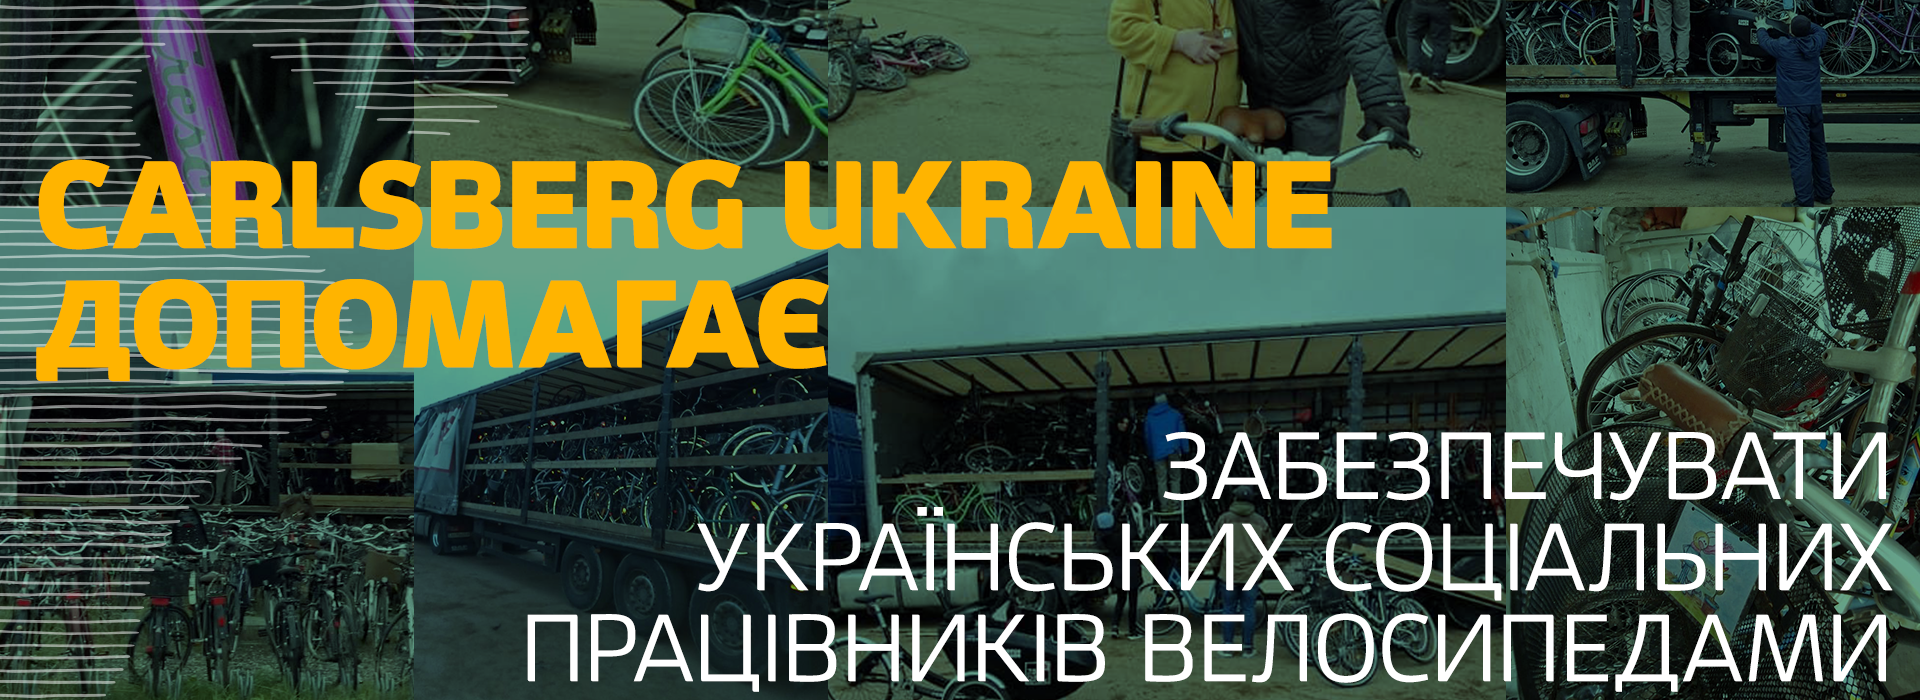 Carlsberg Ukraine допомагає забезпечувати українських соціальних працівників велосипедами